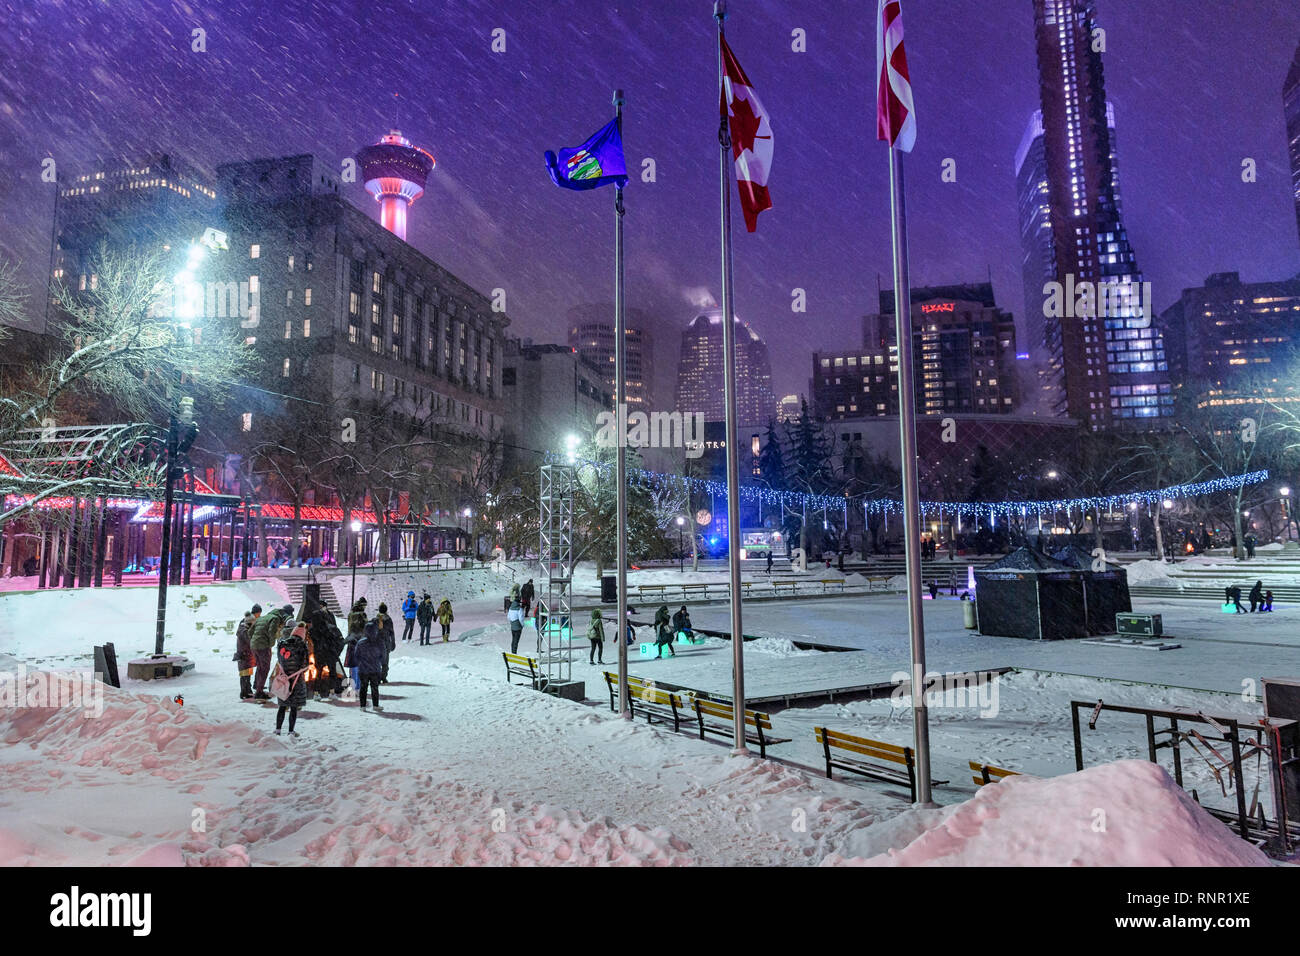 Hiver neige nuit à la Plaza olympique de Calgary Fire Pit. Alberta Canada Banque D'Images